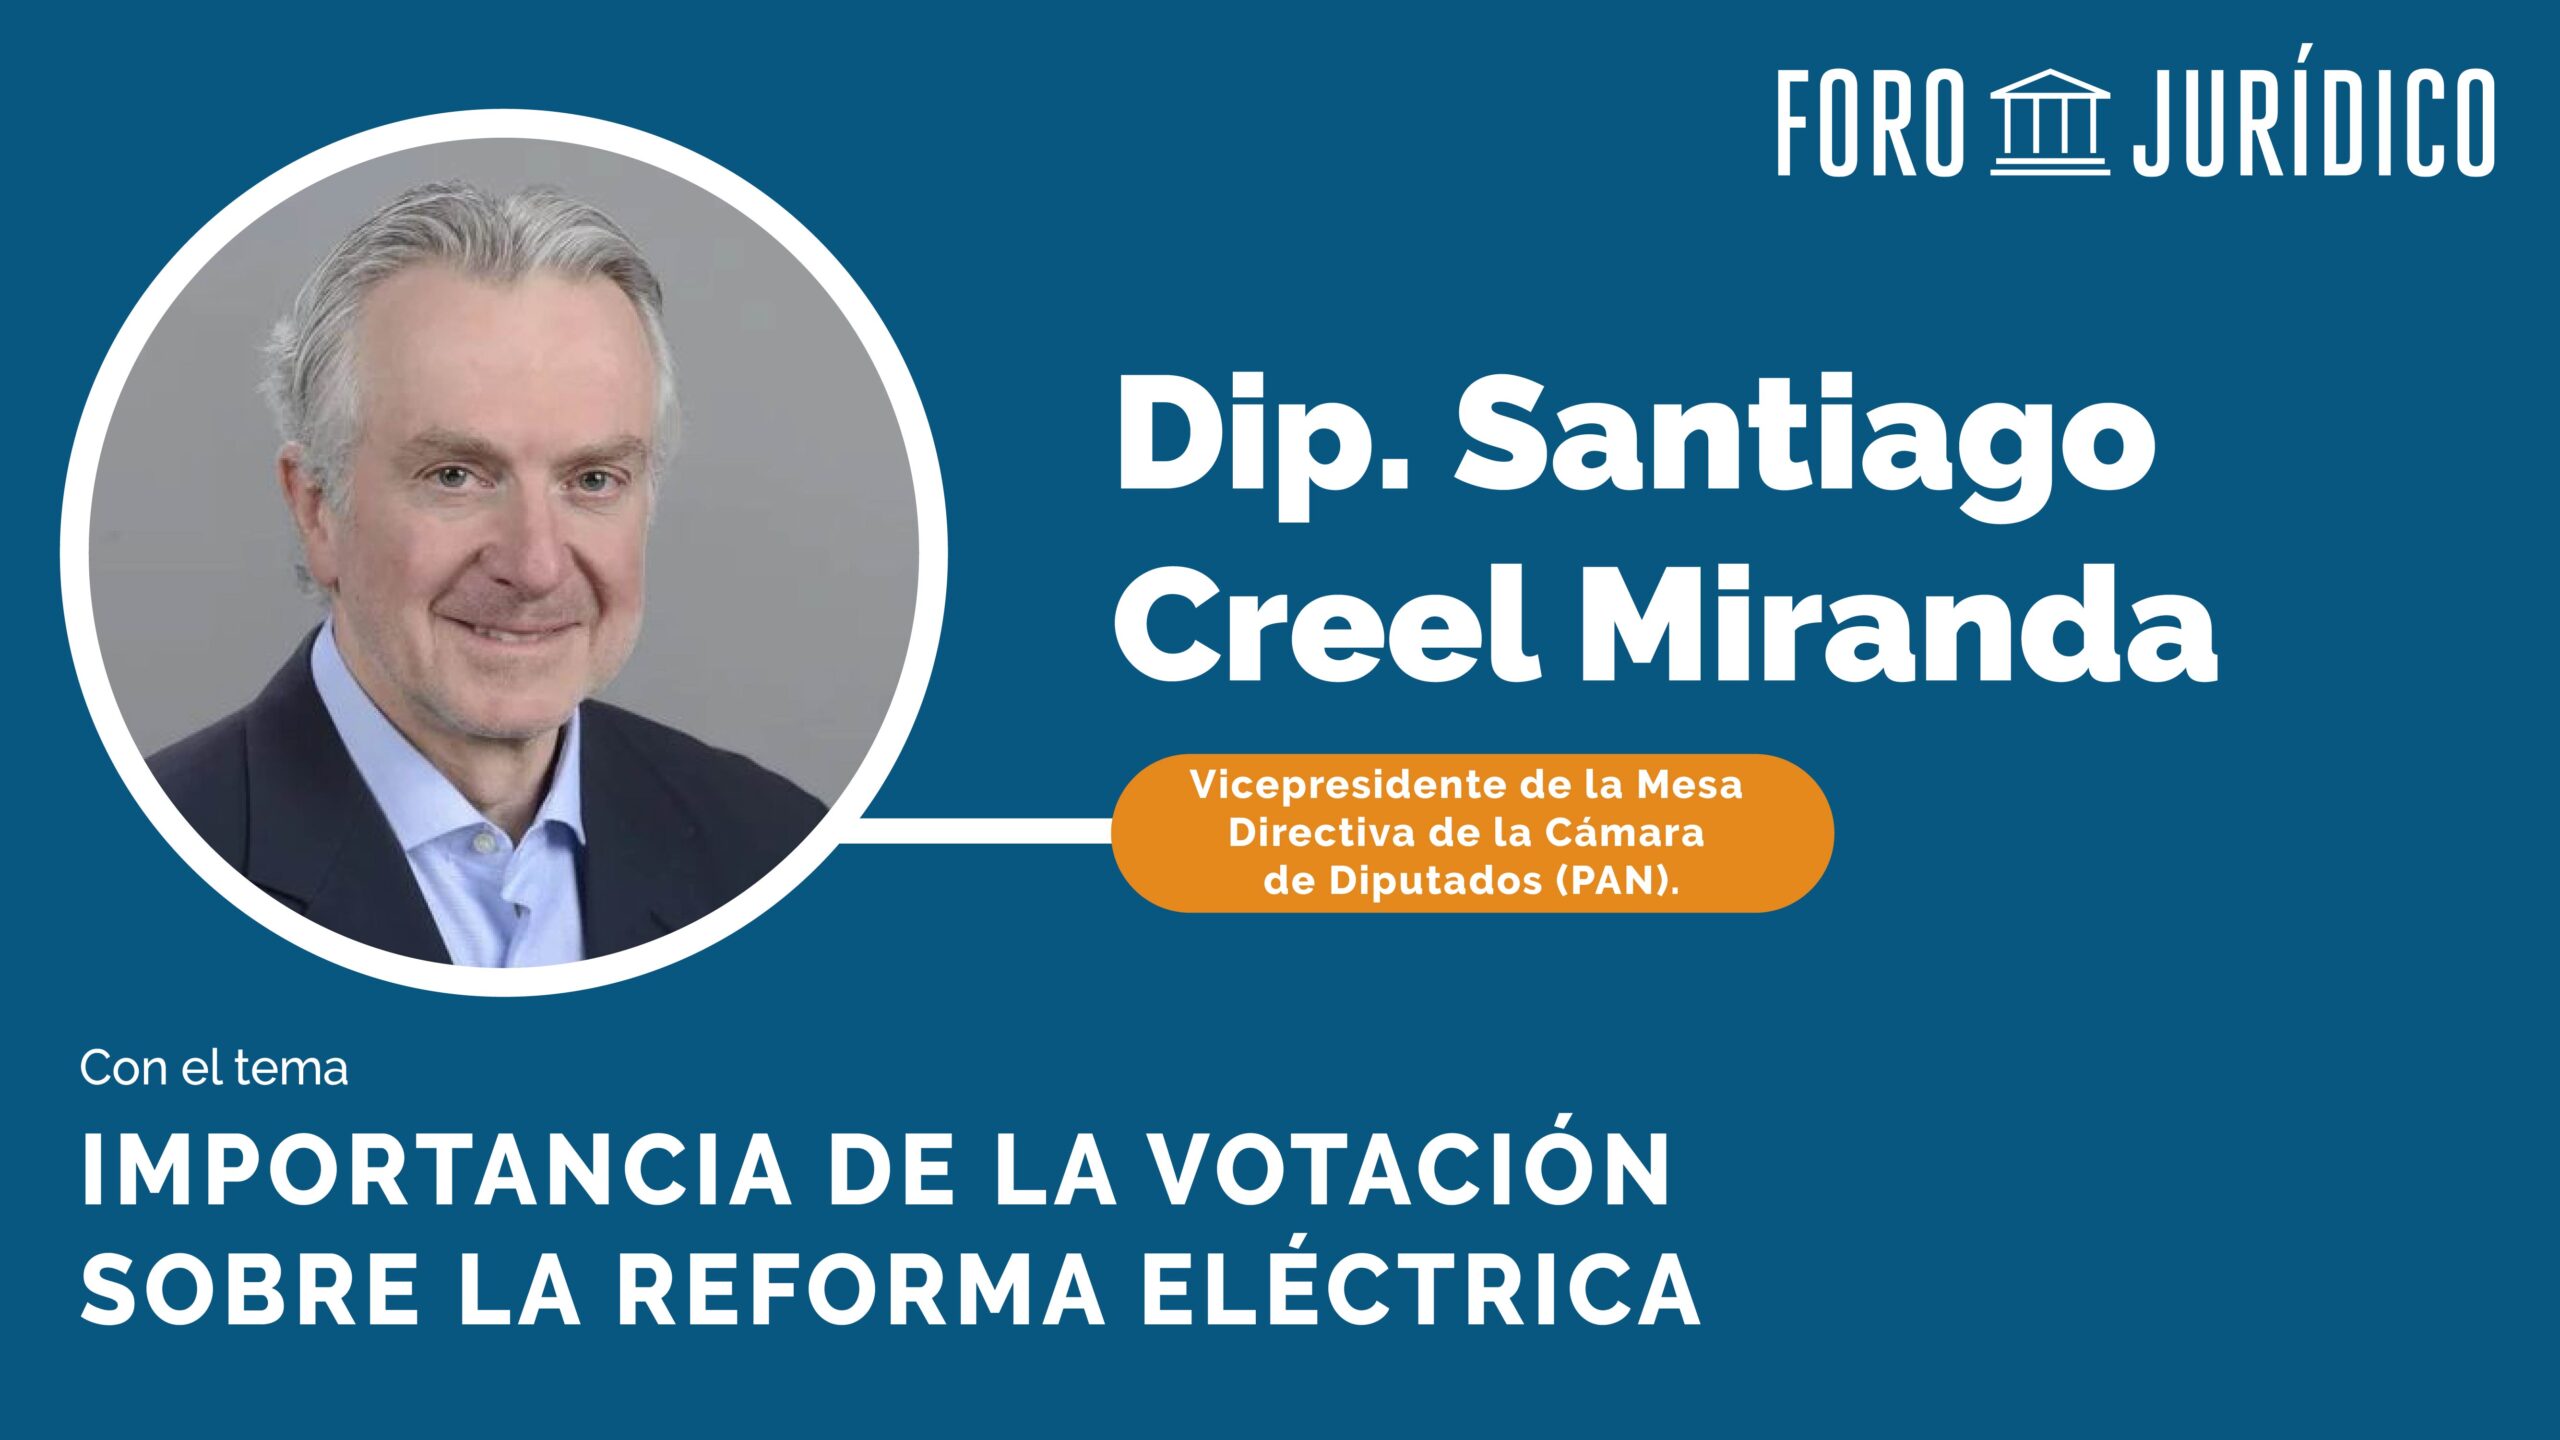 Foro Jurídico La Importancia de la Votación sobre la Reforma Eléctrica